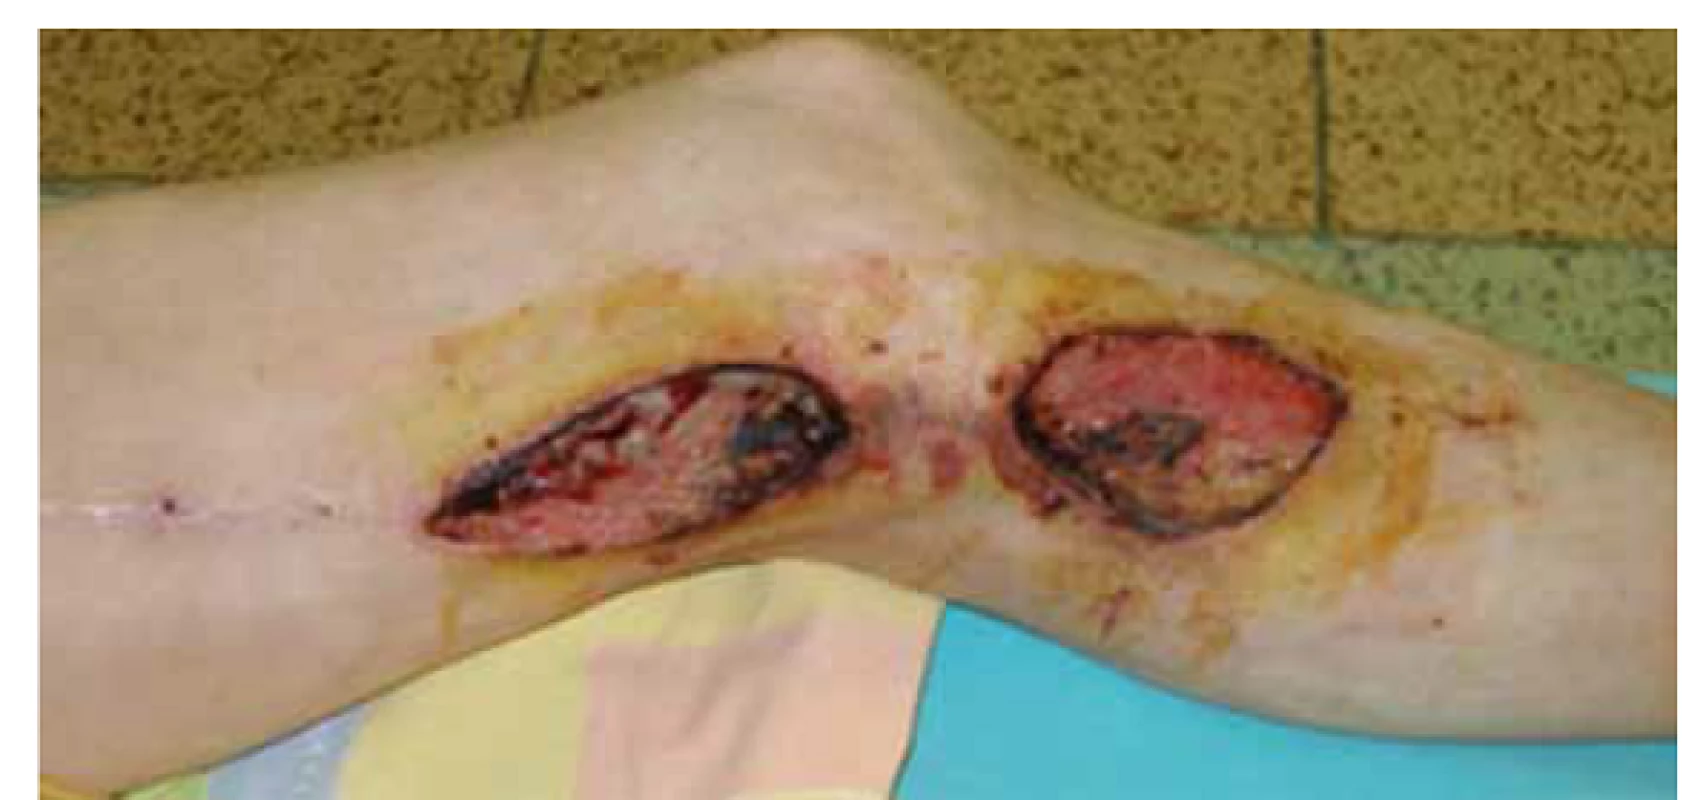 Infekcia a dehiscencia operačných rán 1 mesiac po implantácii femoropopliteálneho distálneho bypasu s autológnou reverznou vena saphena magna na ľavej dolnej končatine.